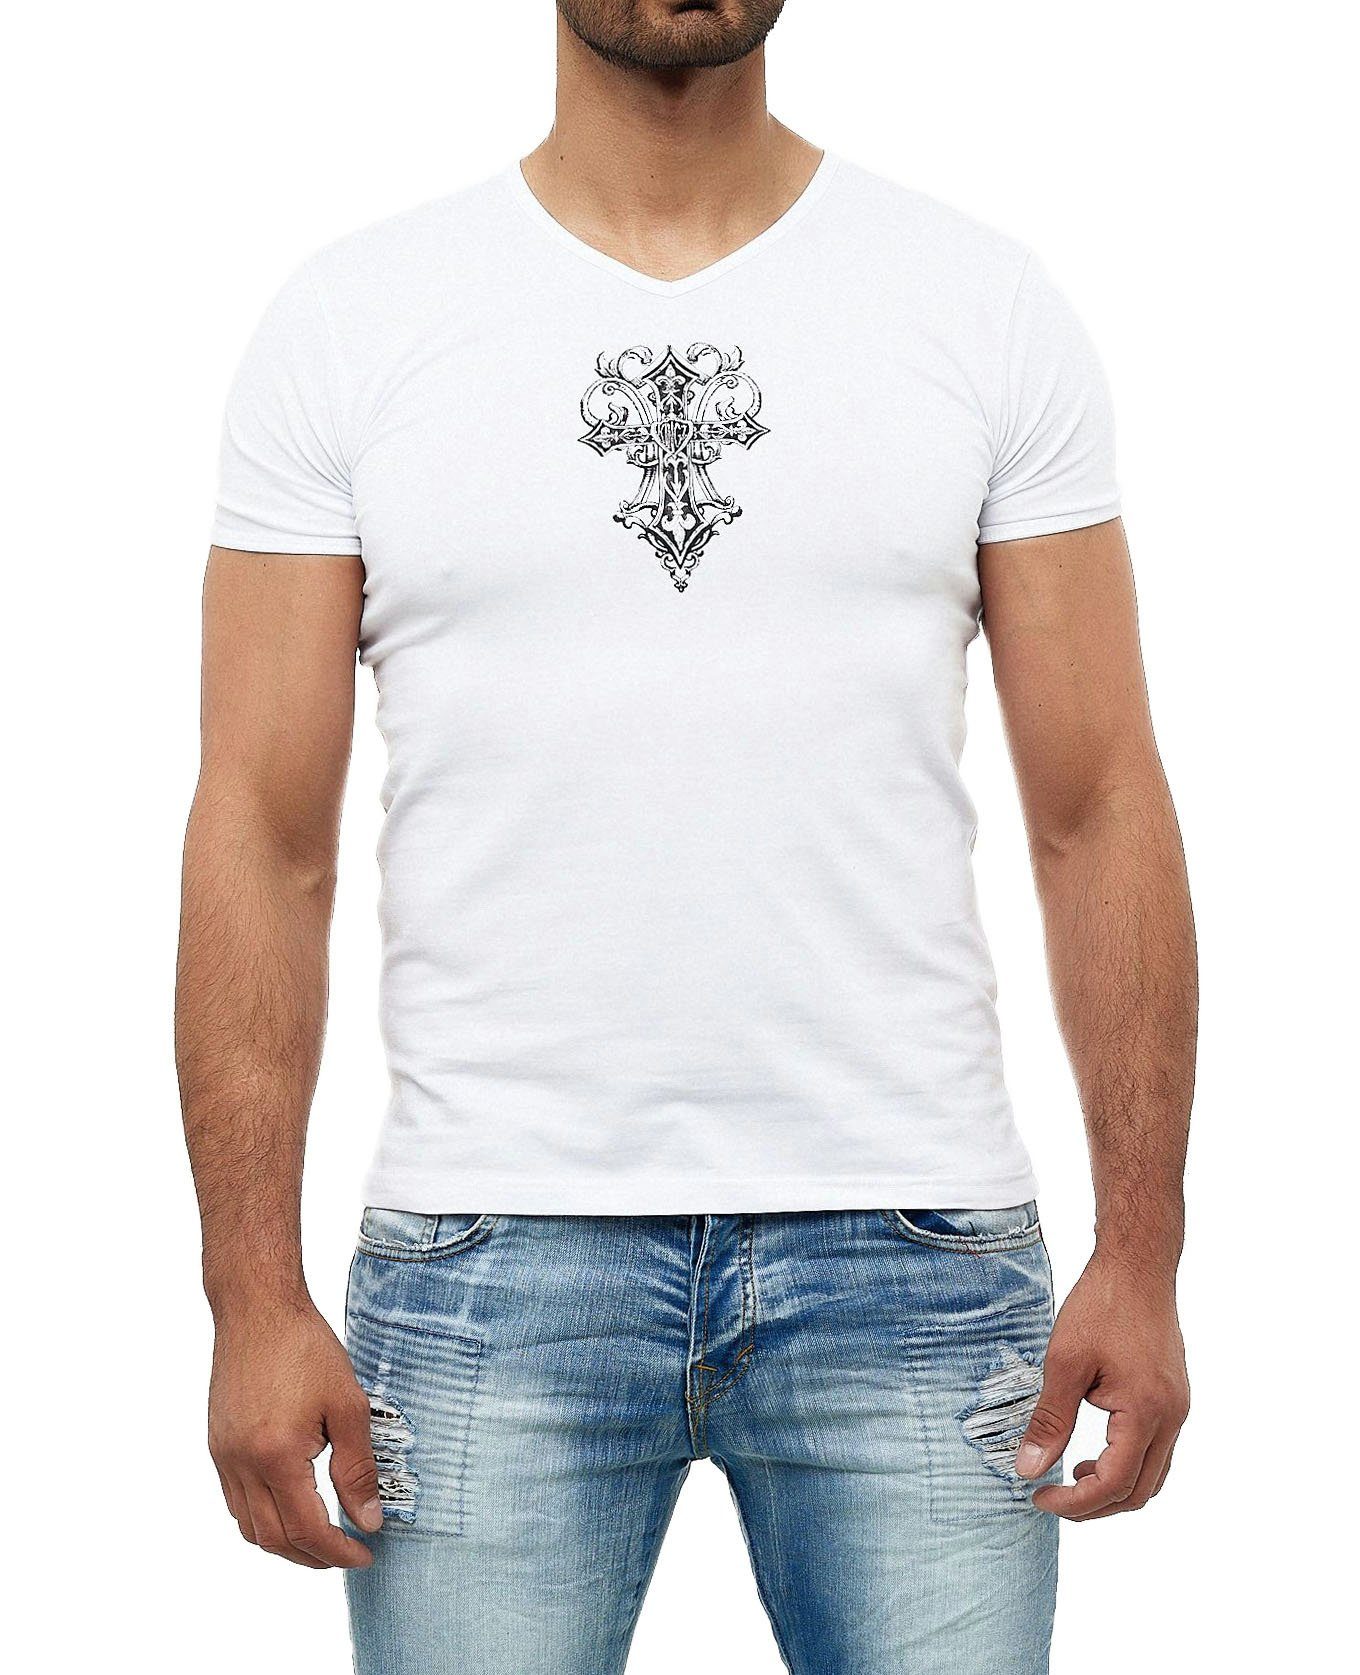 KINGZ T-Shirt in ausgefallenem Design weiß-silberfarben